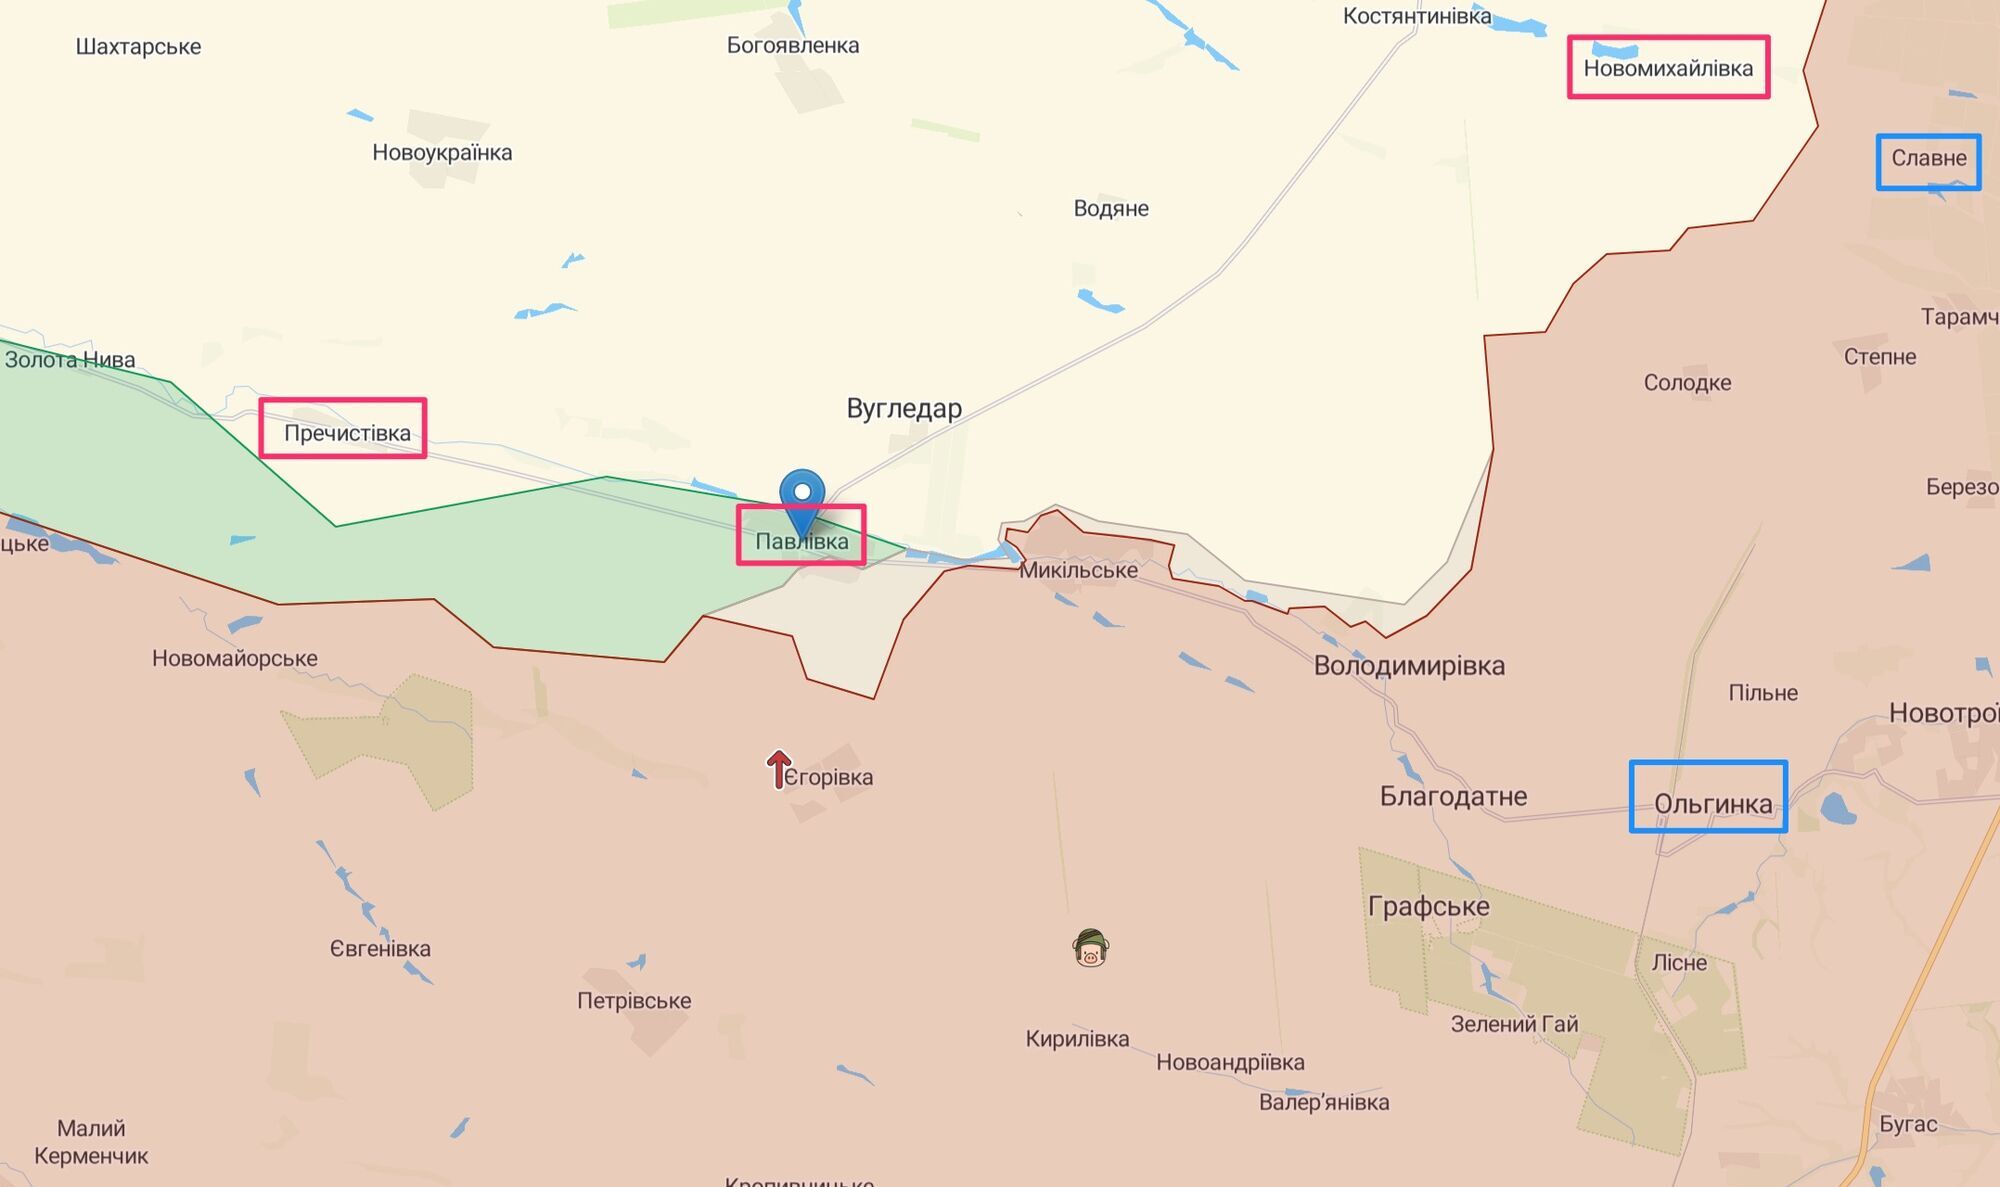 Окупанти атакують Павлівку, Пречистівку і Новомихайлівку, резерви розташовані між Ольгівкою і Славним